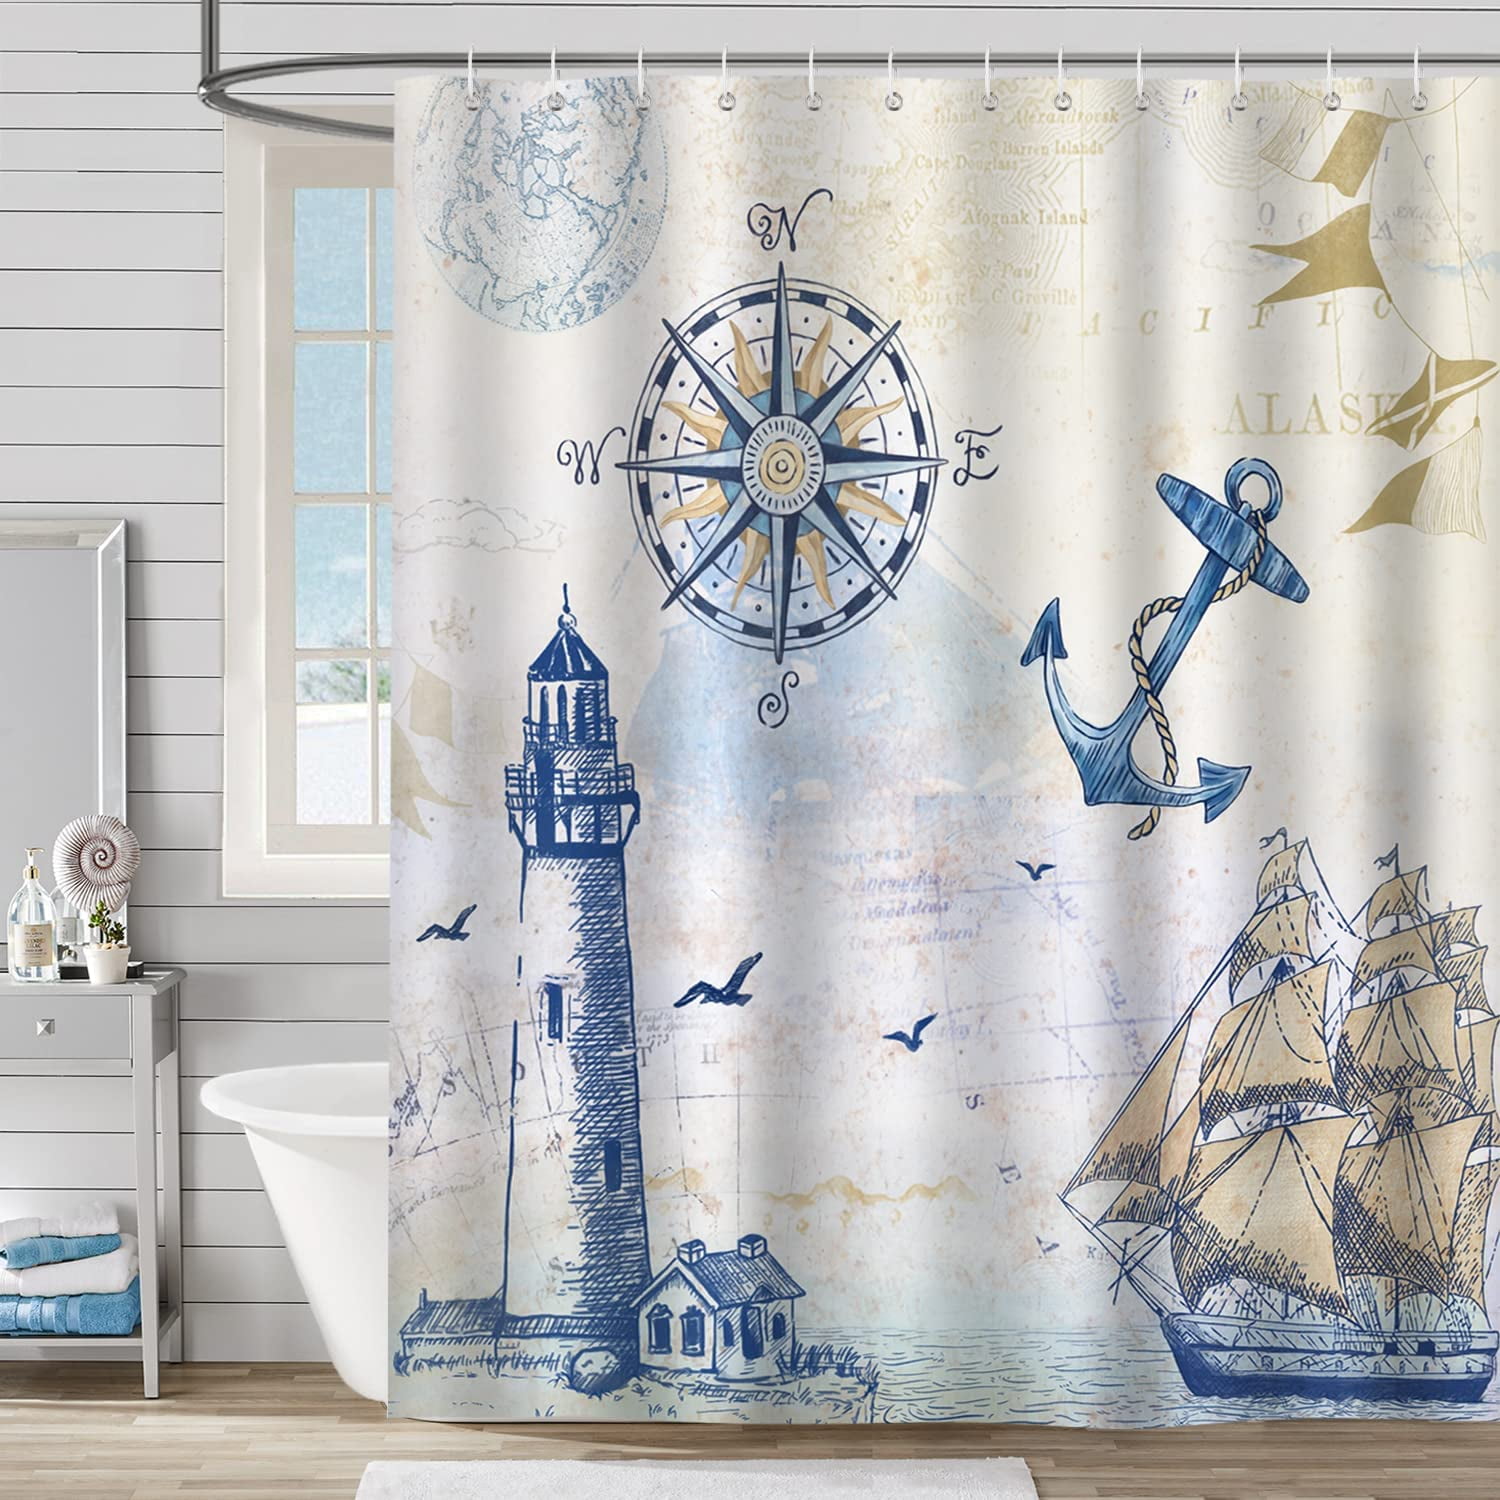 Lighthouse and beach Shower Curtain Bathroom Decor Fabric & 12hooks 71*71inches 